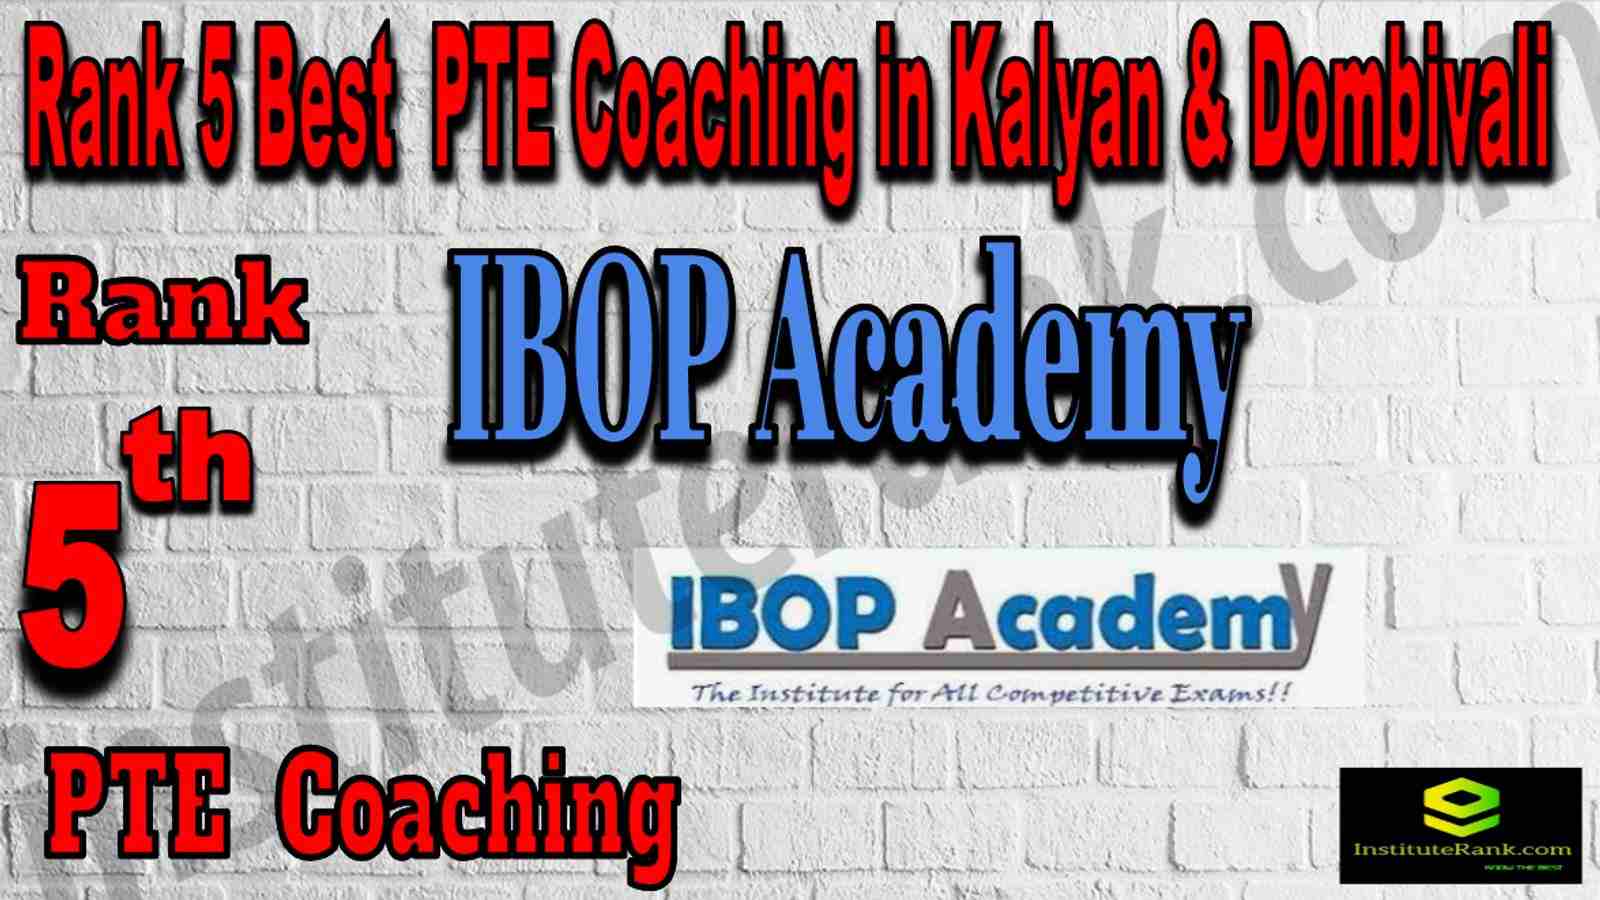 Rank 5 Best PTE Coaching in Kalyan & Dombivali